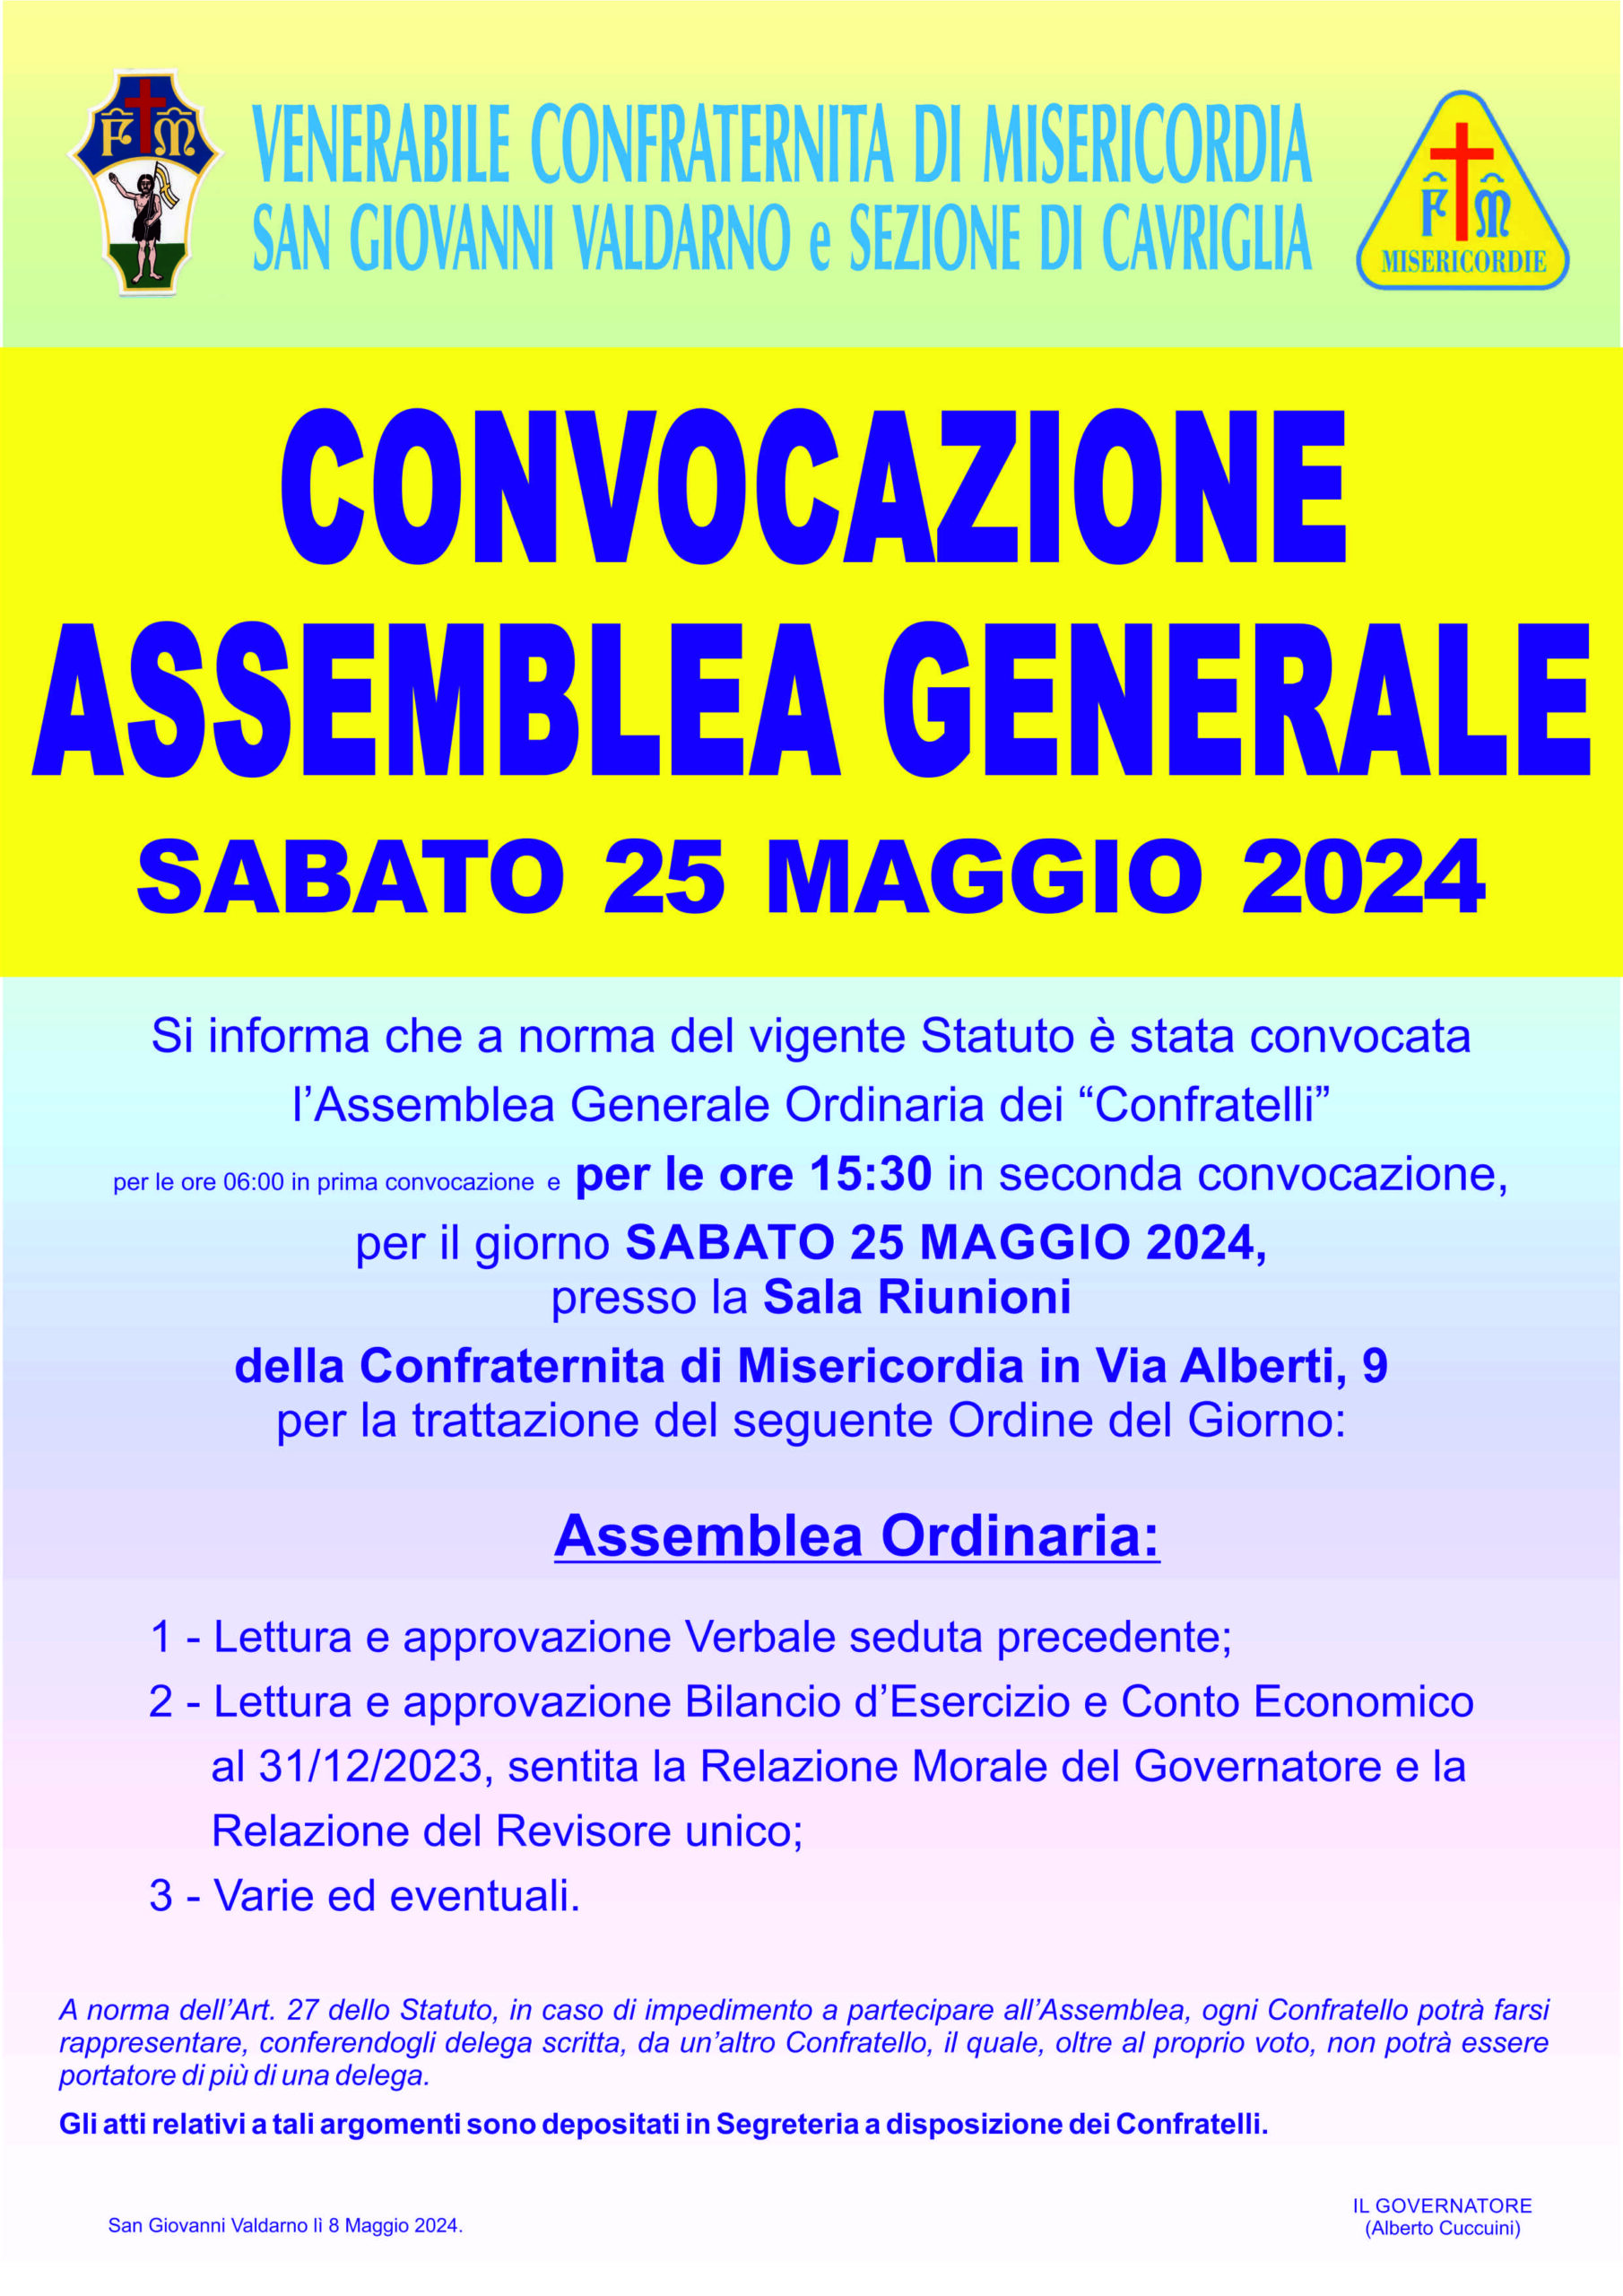 Convocazione Assemblea Generale Maggio 2024